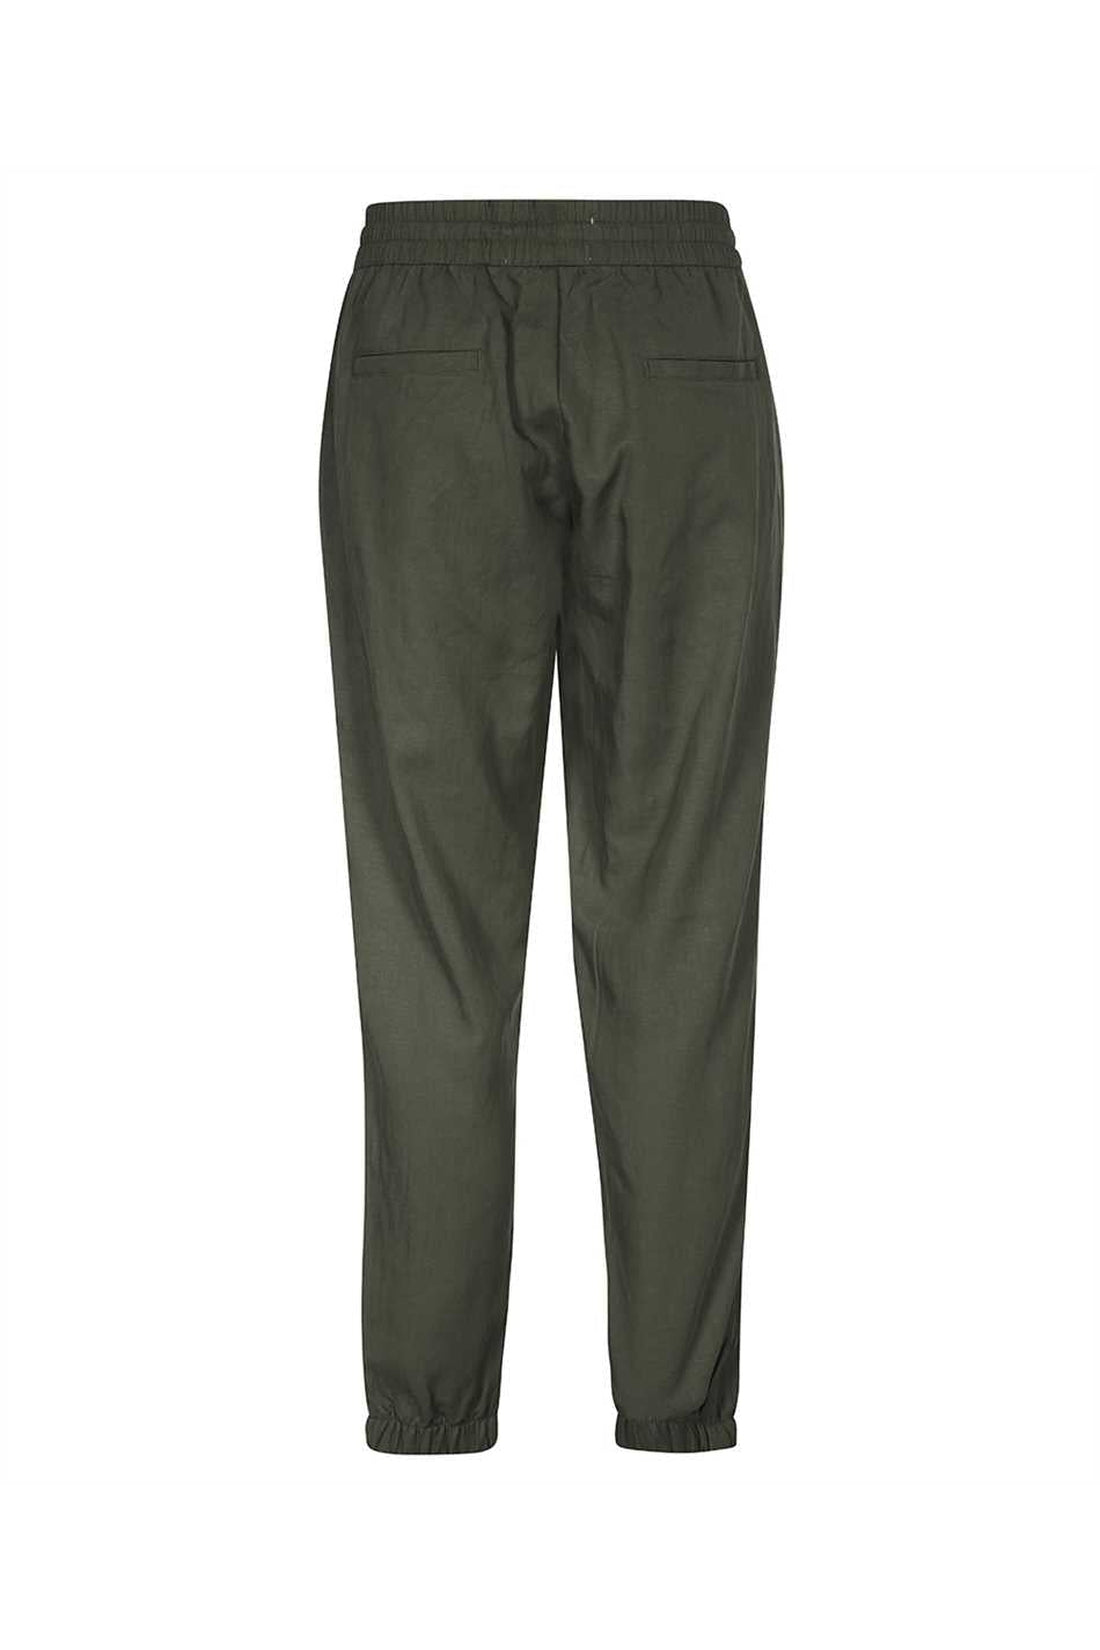 Les Deux-OUTLET-SALE-Adjustable drawstring elastic waistband trousers-ARCHIVIST